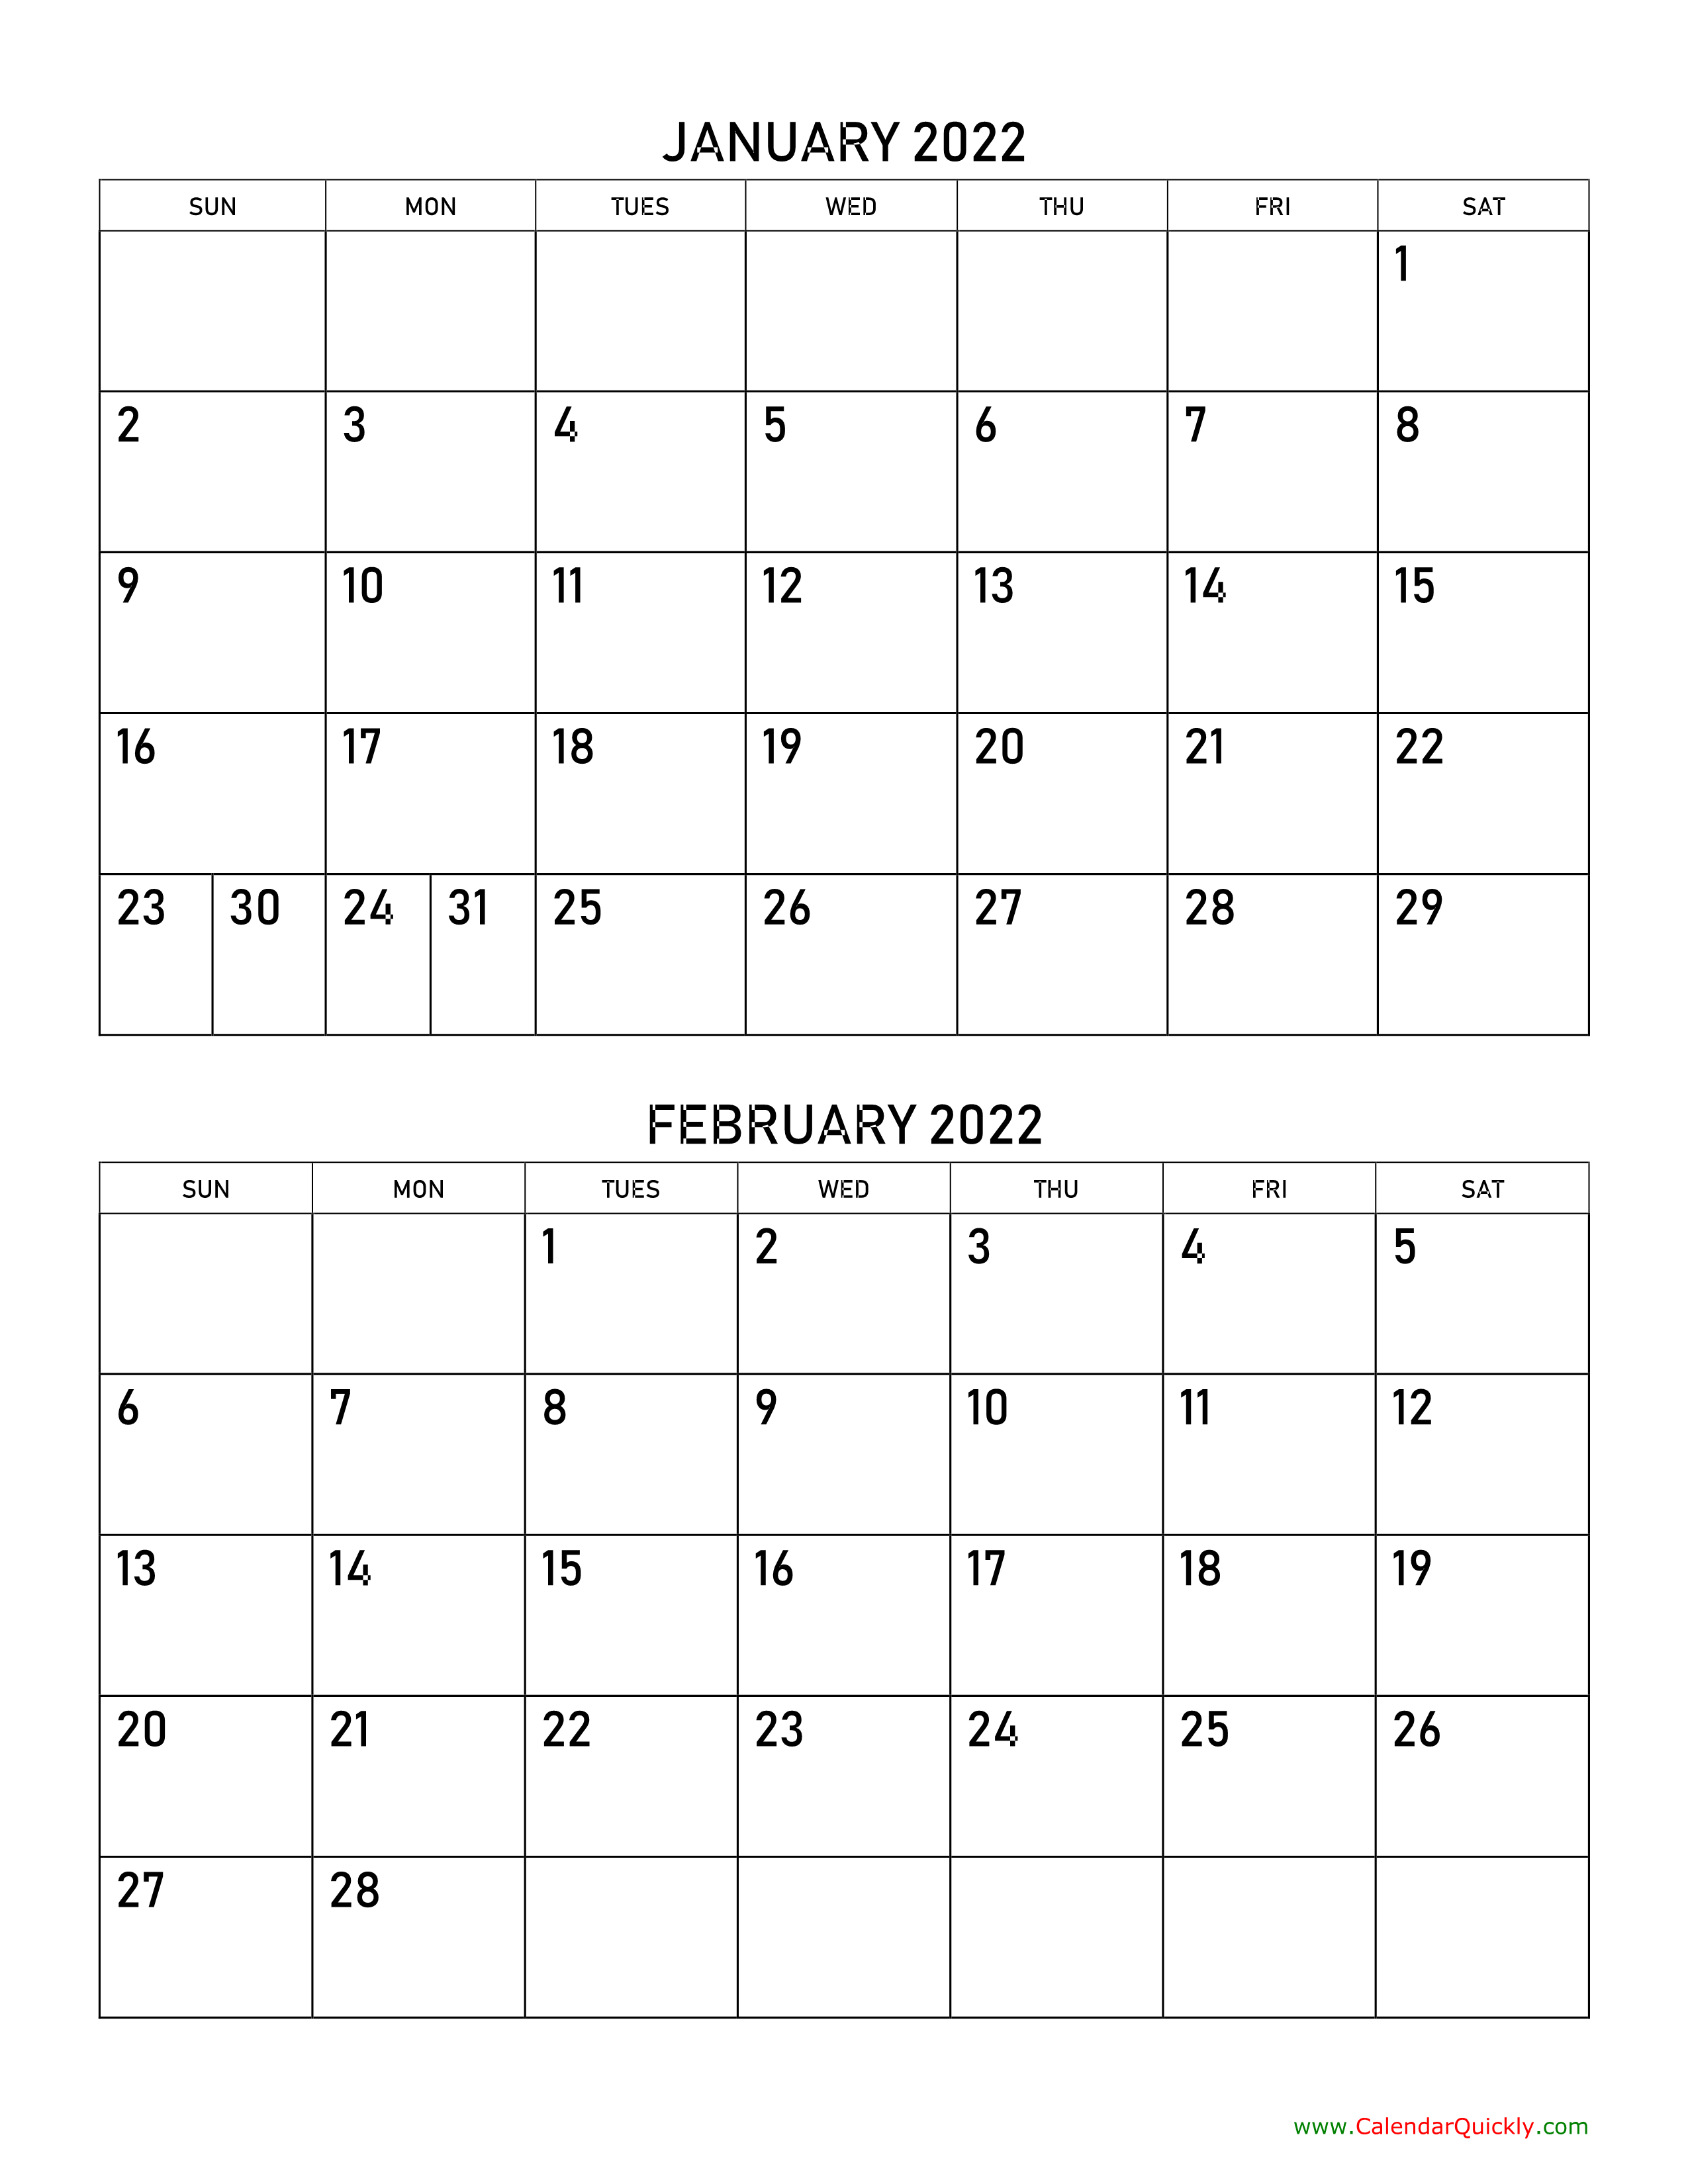 January and February 2022 Calendar Calendar Quickly